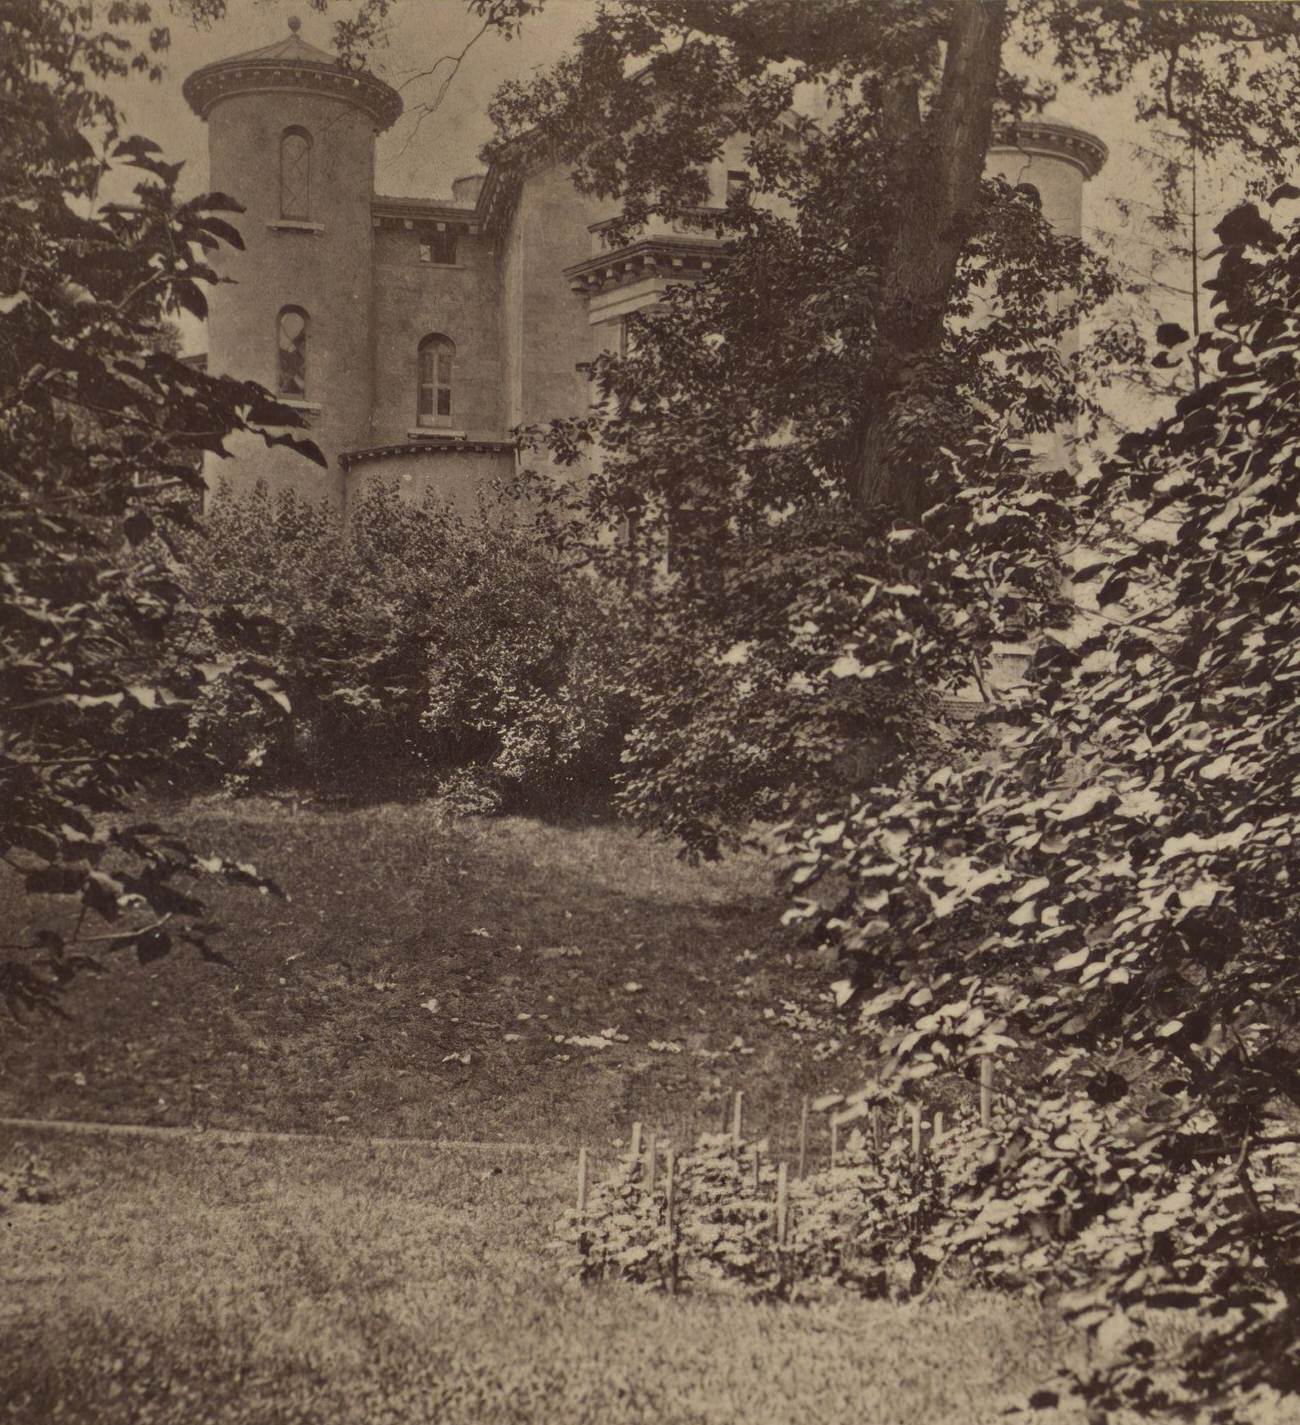 Litchfield Castle In Prospect Park, Brooklyn, 1910